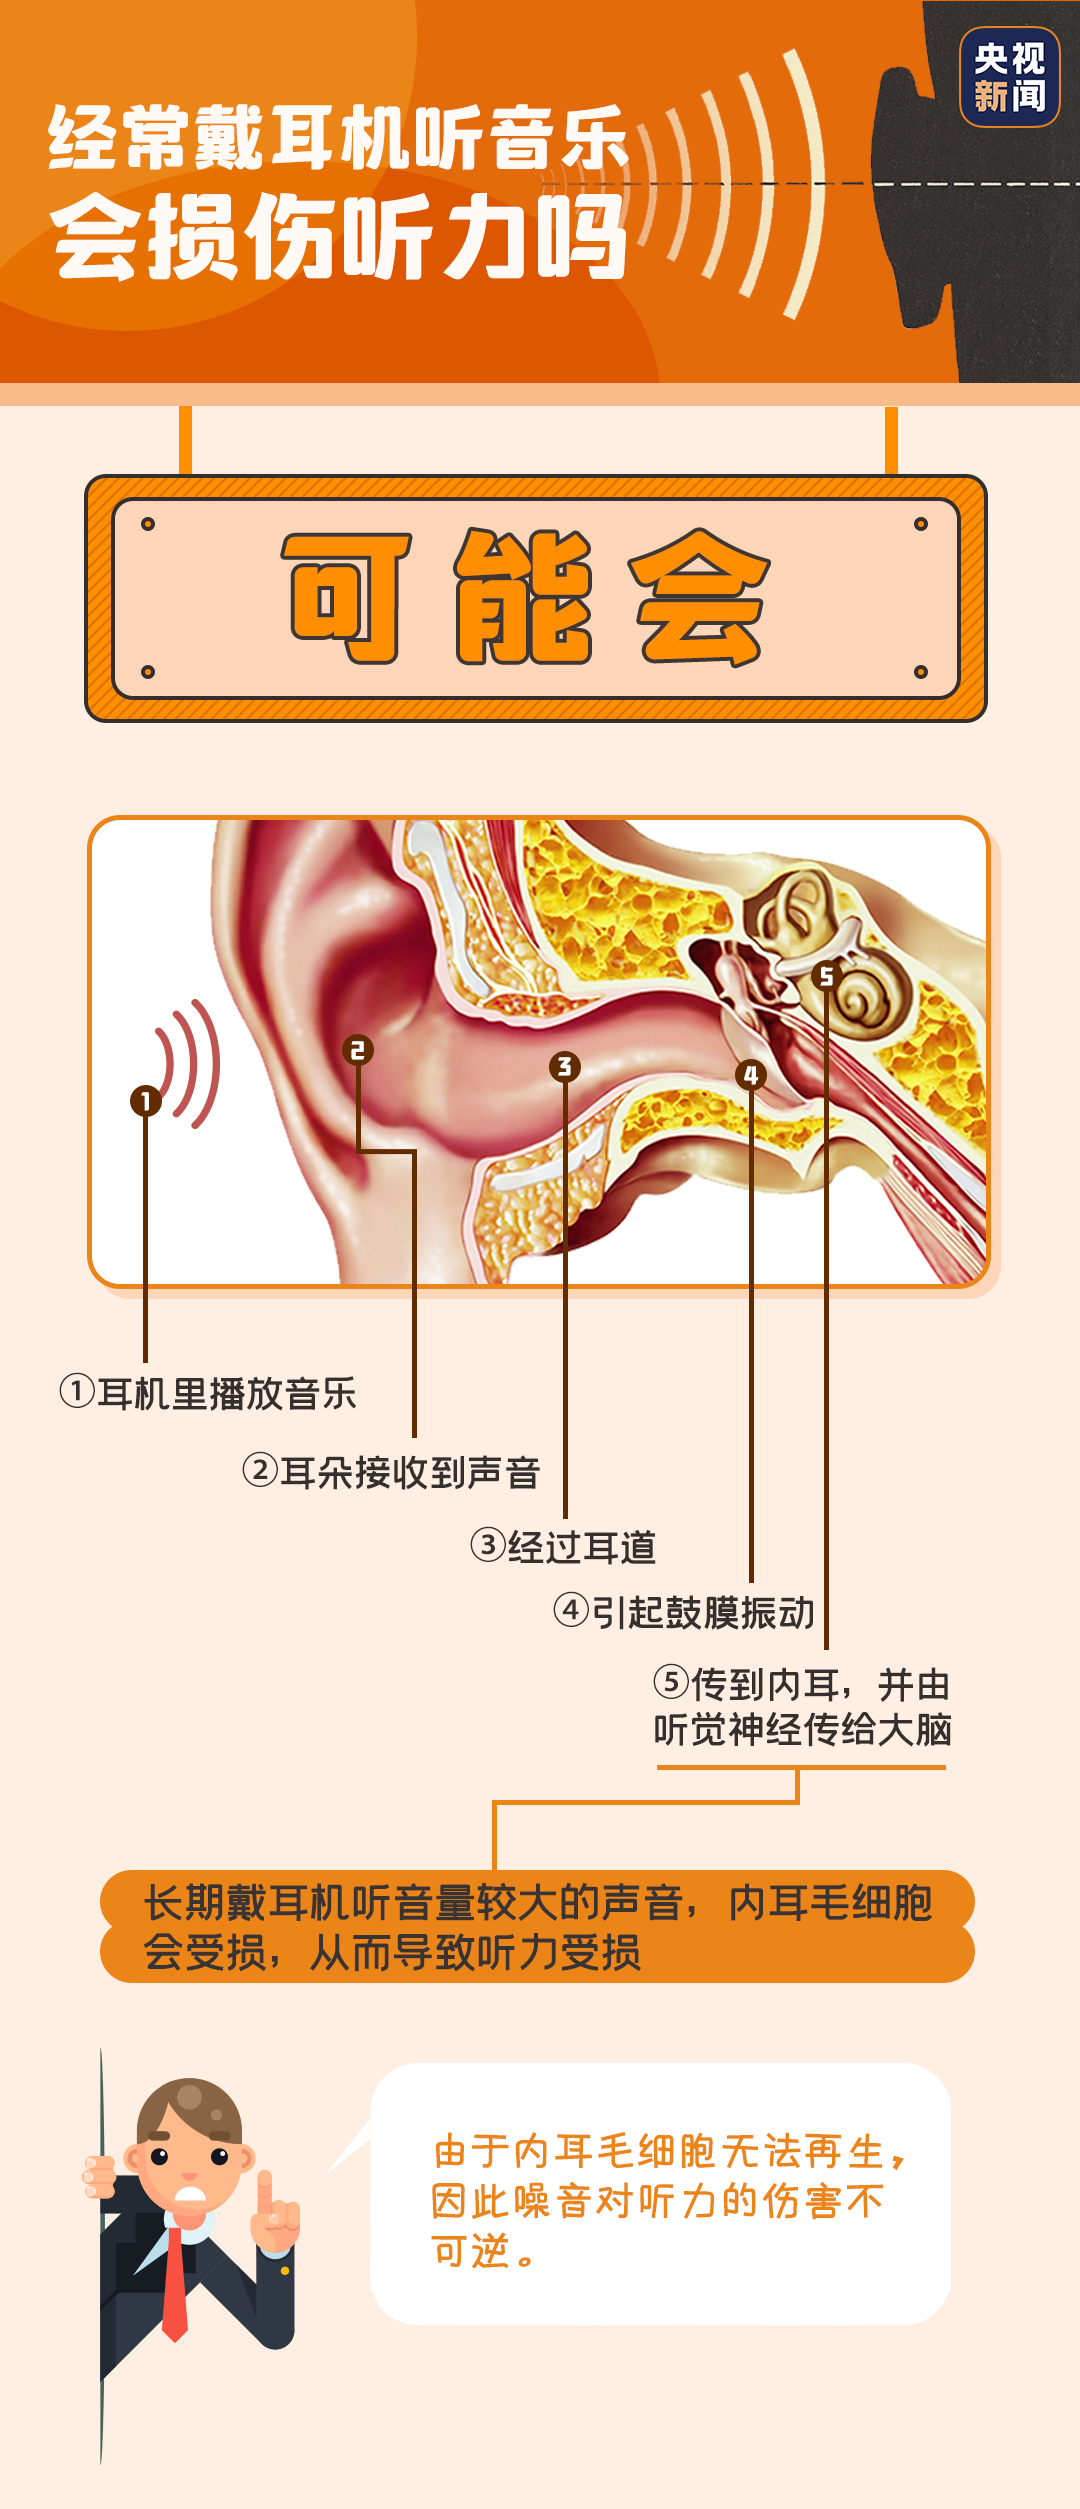 健康科普用耳 保护听力/爱护耳朵小贴士/用耳知识科普/清新手绘-样式模板素材-135平台